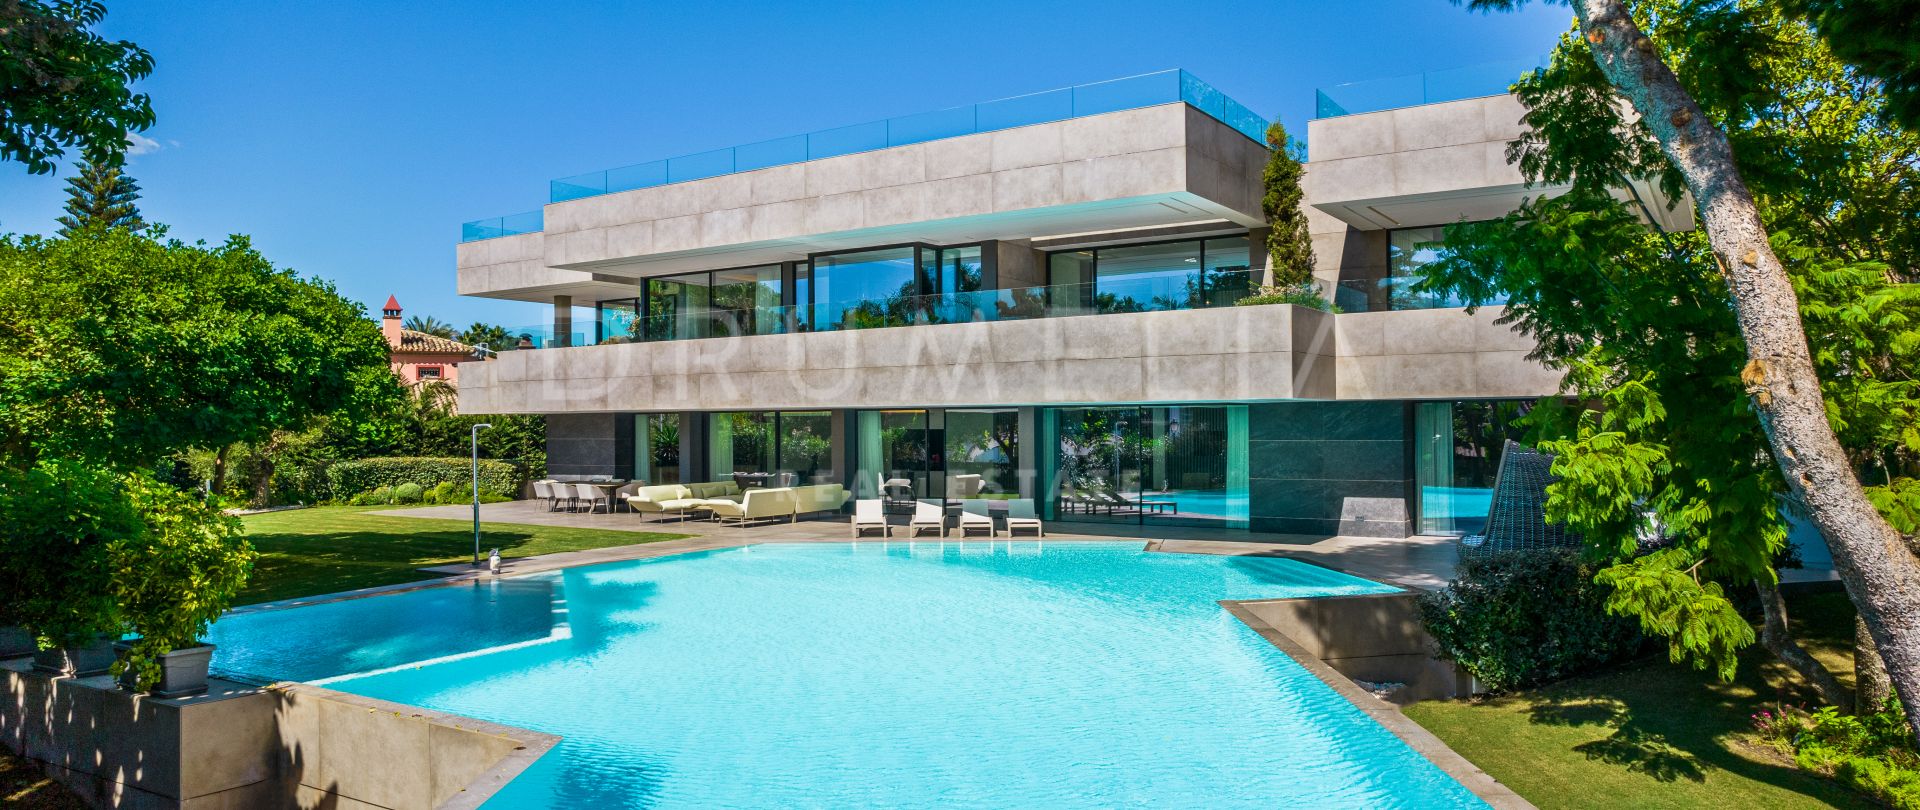 Beeindruckende brandneue State-of-the-Art moderne Villa in Seaside Casasola